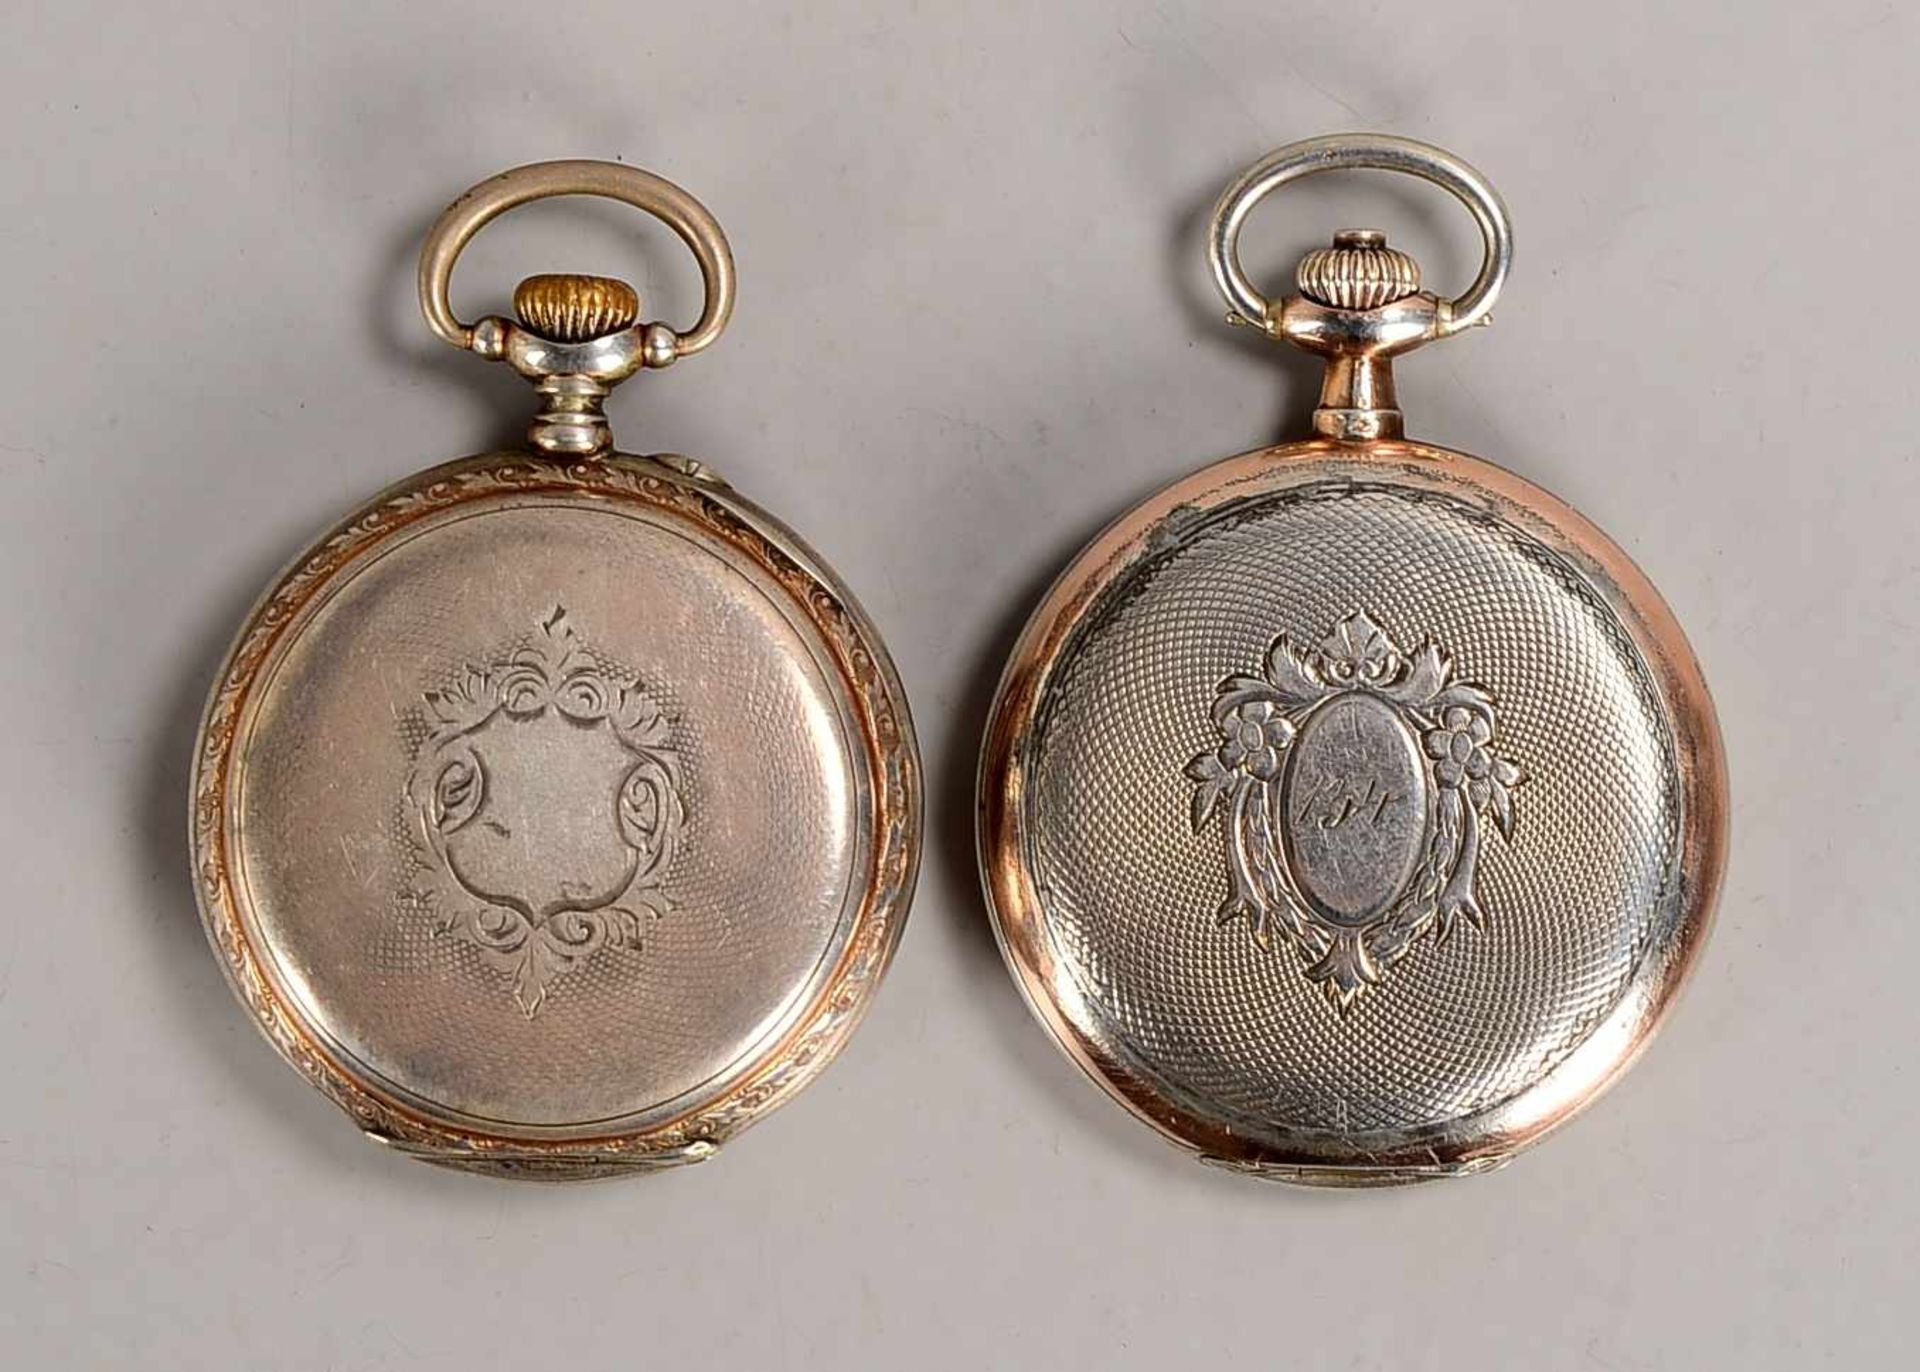 2 Taschenuhren, 800 Silber-Gehäuse: 1x Omega, läuft; und 1x Union Horlogère, läuft an; Durchmesser - Bild 3 aus 3